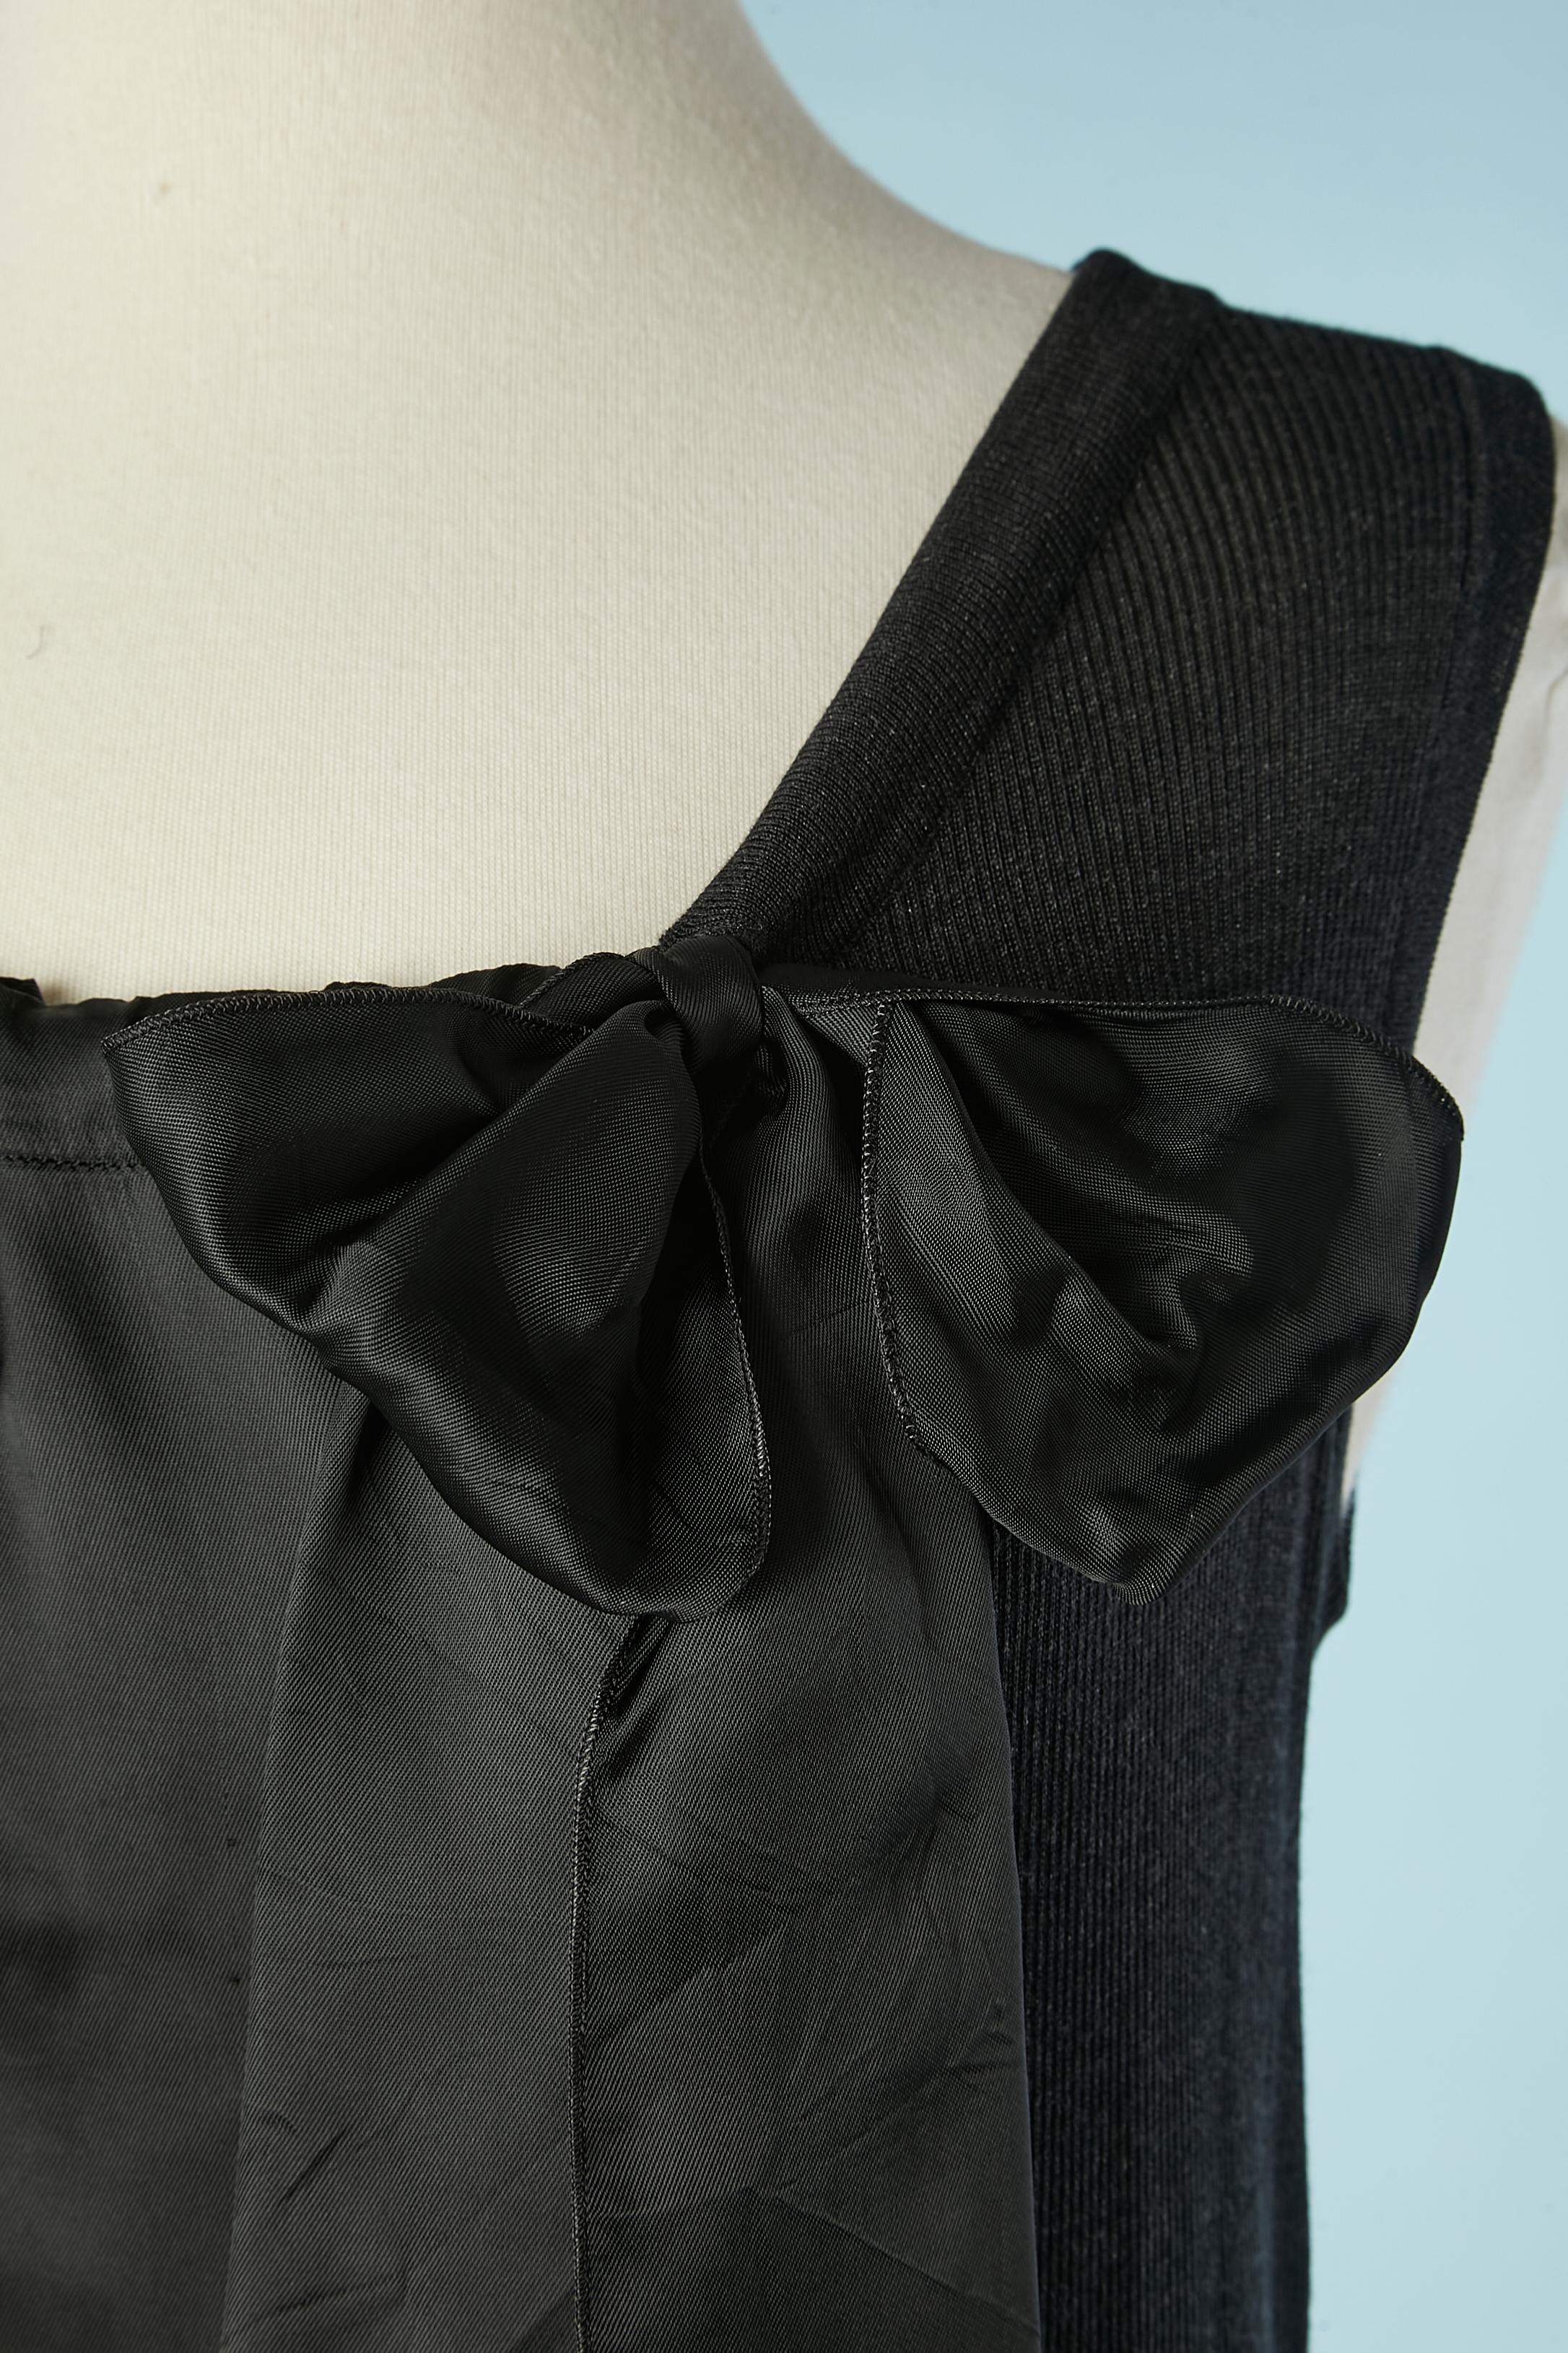 Robe de cocktail noire en MATERIAL  avec arc. Composition du jersey : 100% soie. Insertions et garnitures : 100% rayonne.
TAILLE 42 (It) 38 (Fr) M 